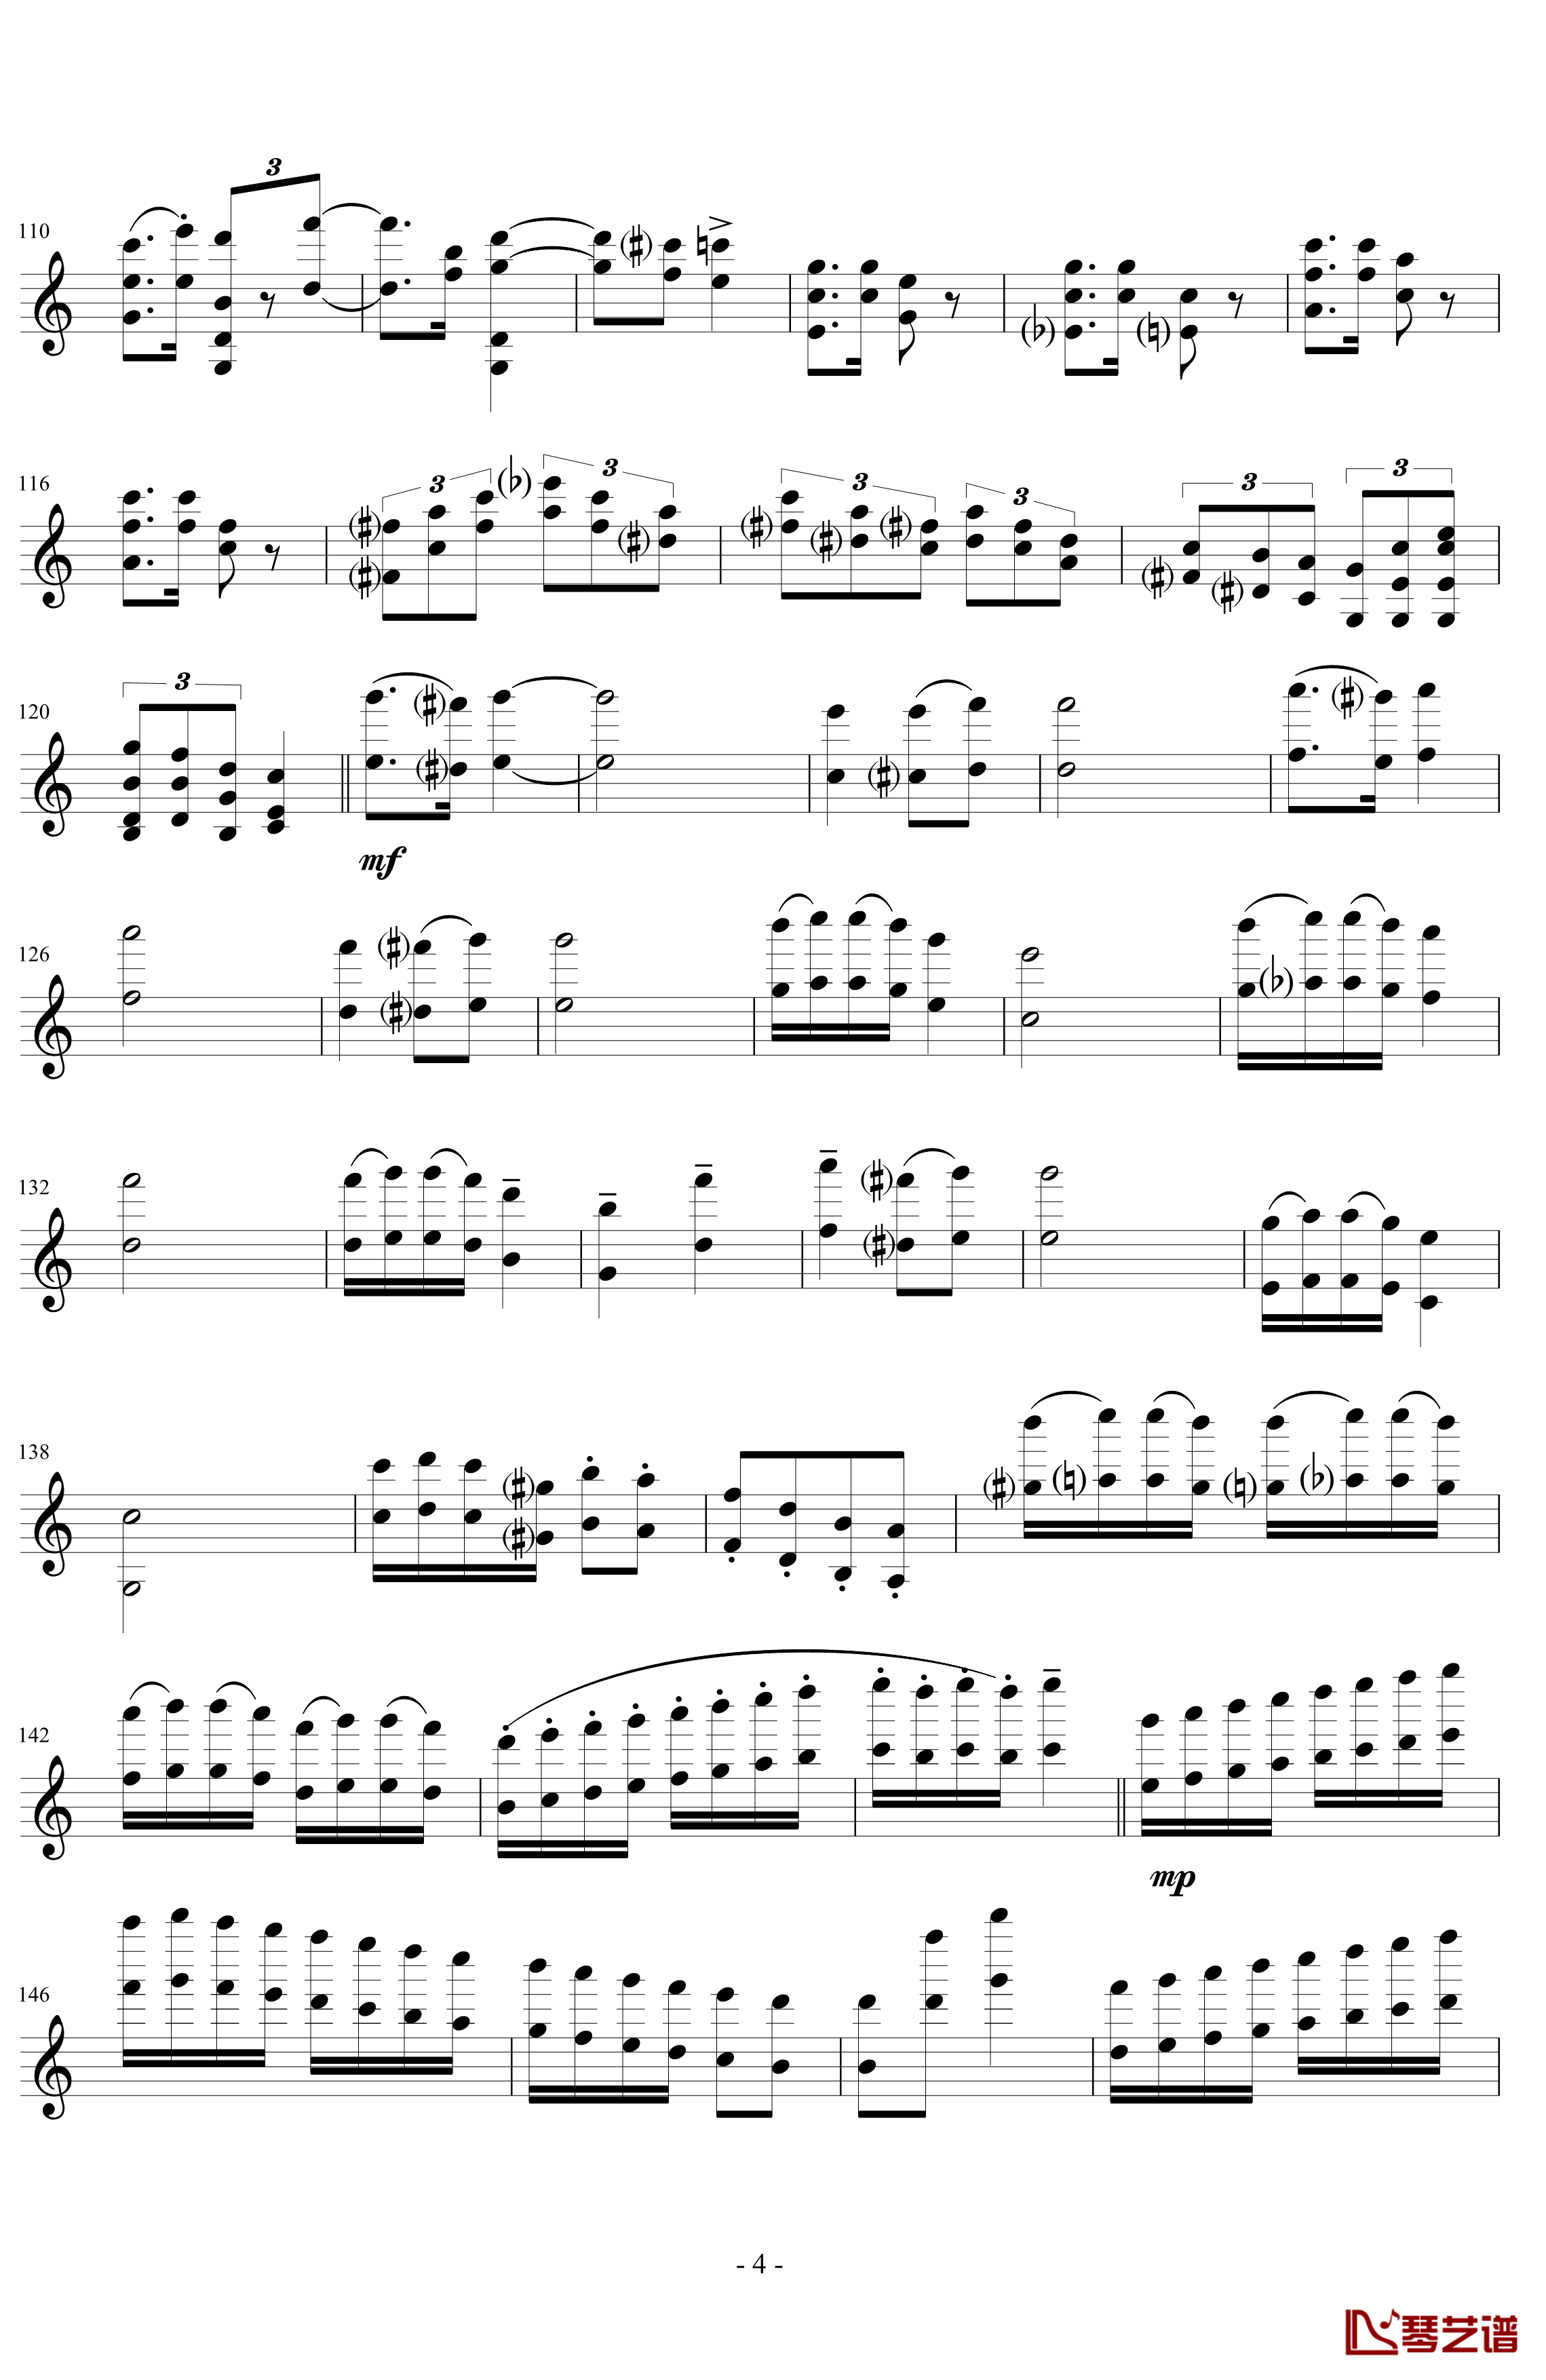 莫扎特主题炫技变奏曲钢琴谱-小提琴版-莫扎特4